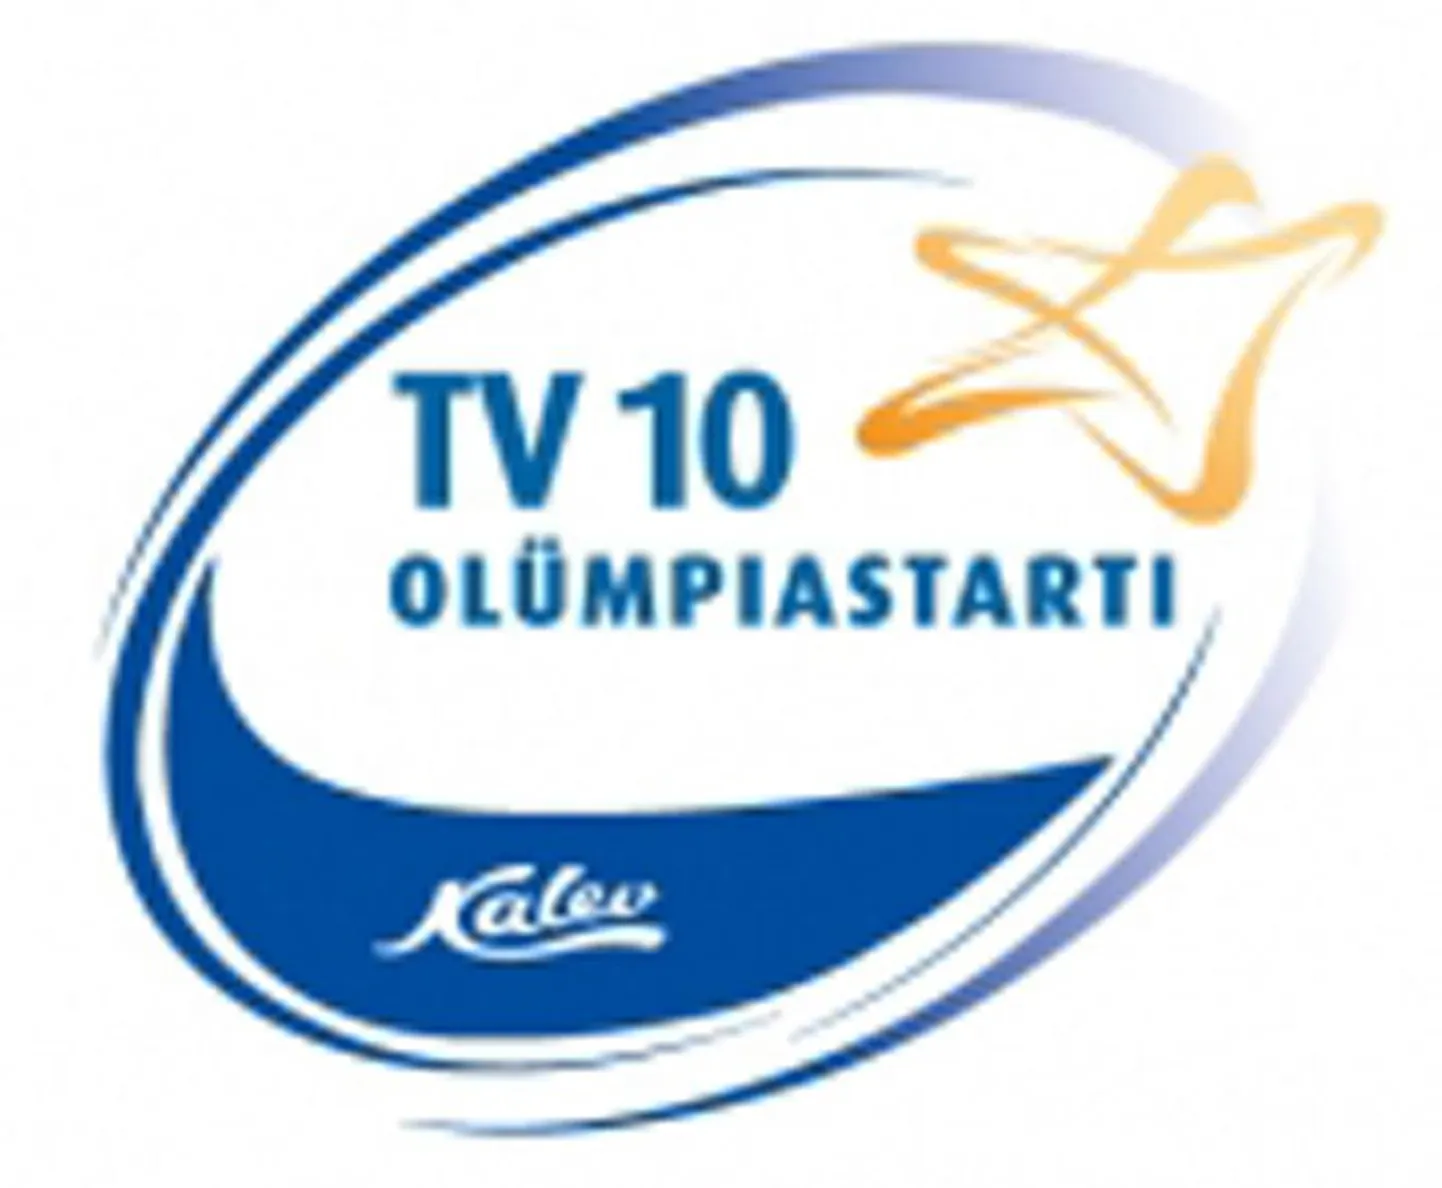 TV 10 olümpiastarti 45. hooaja kolmandal etapil Tartu ülikooli kergejõustikuhallis näitasid meie maakonna spordinoored häid tulemusi.